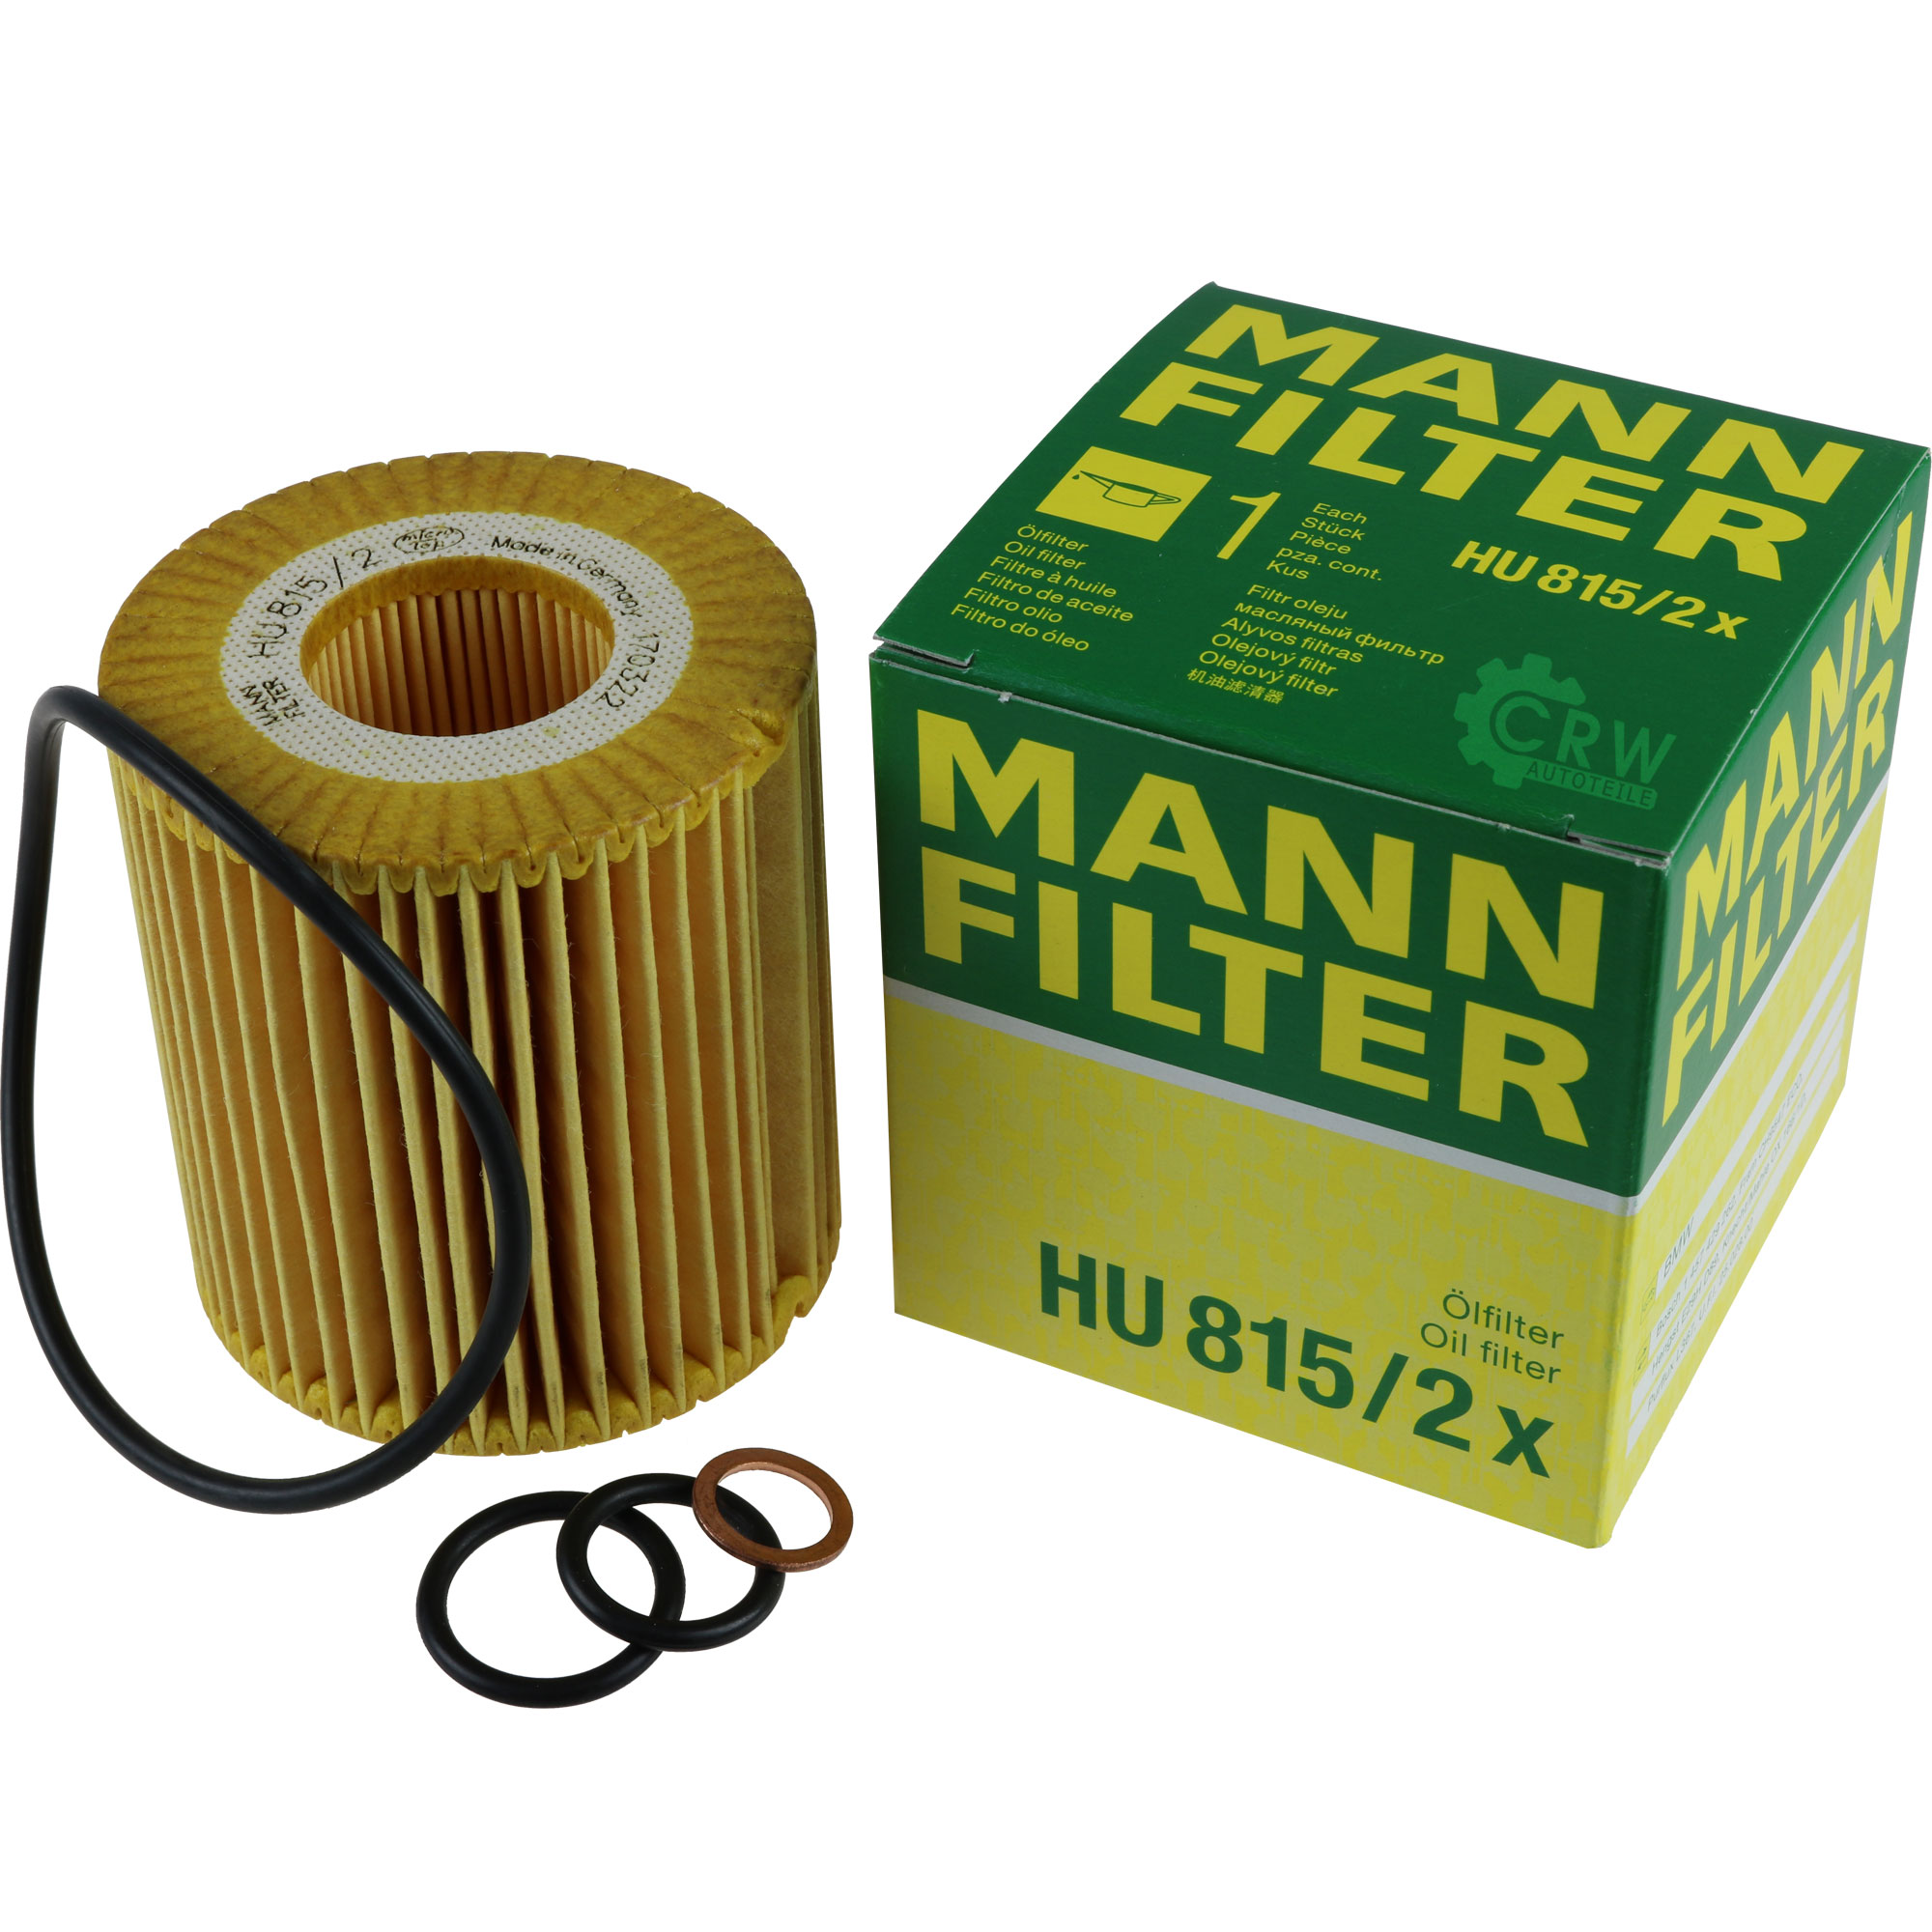 Масляный фильтр манн оригинал. Mann фильтр масляный hu920x. Mann hu815/2x. Фильтр масляный Mann hu7214x для BMW. Hu 815/2 x.